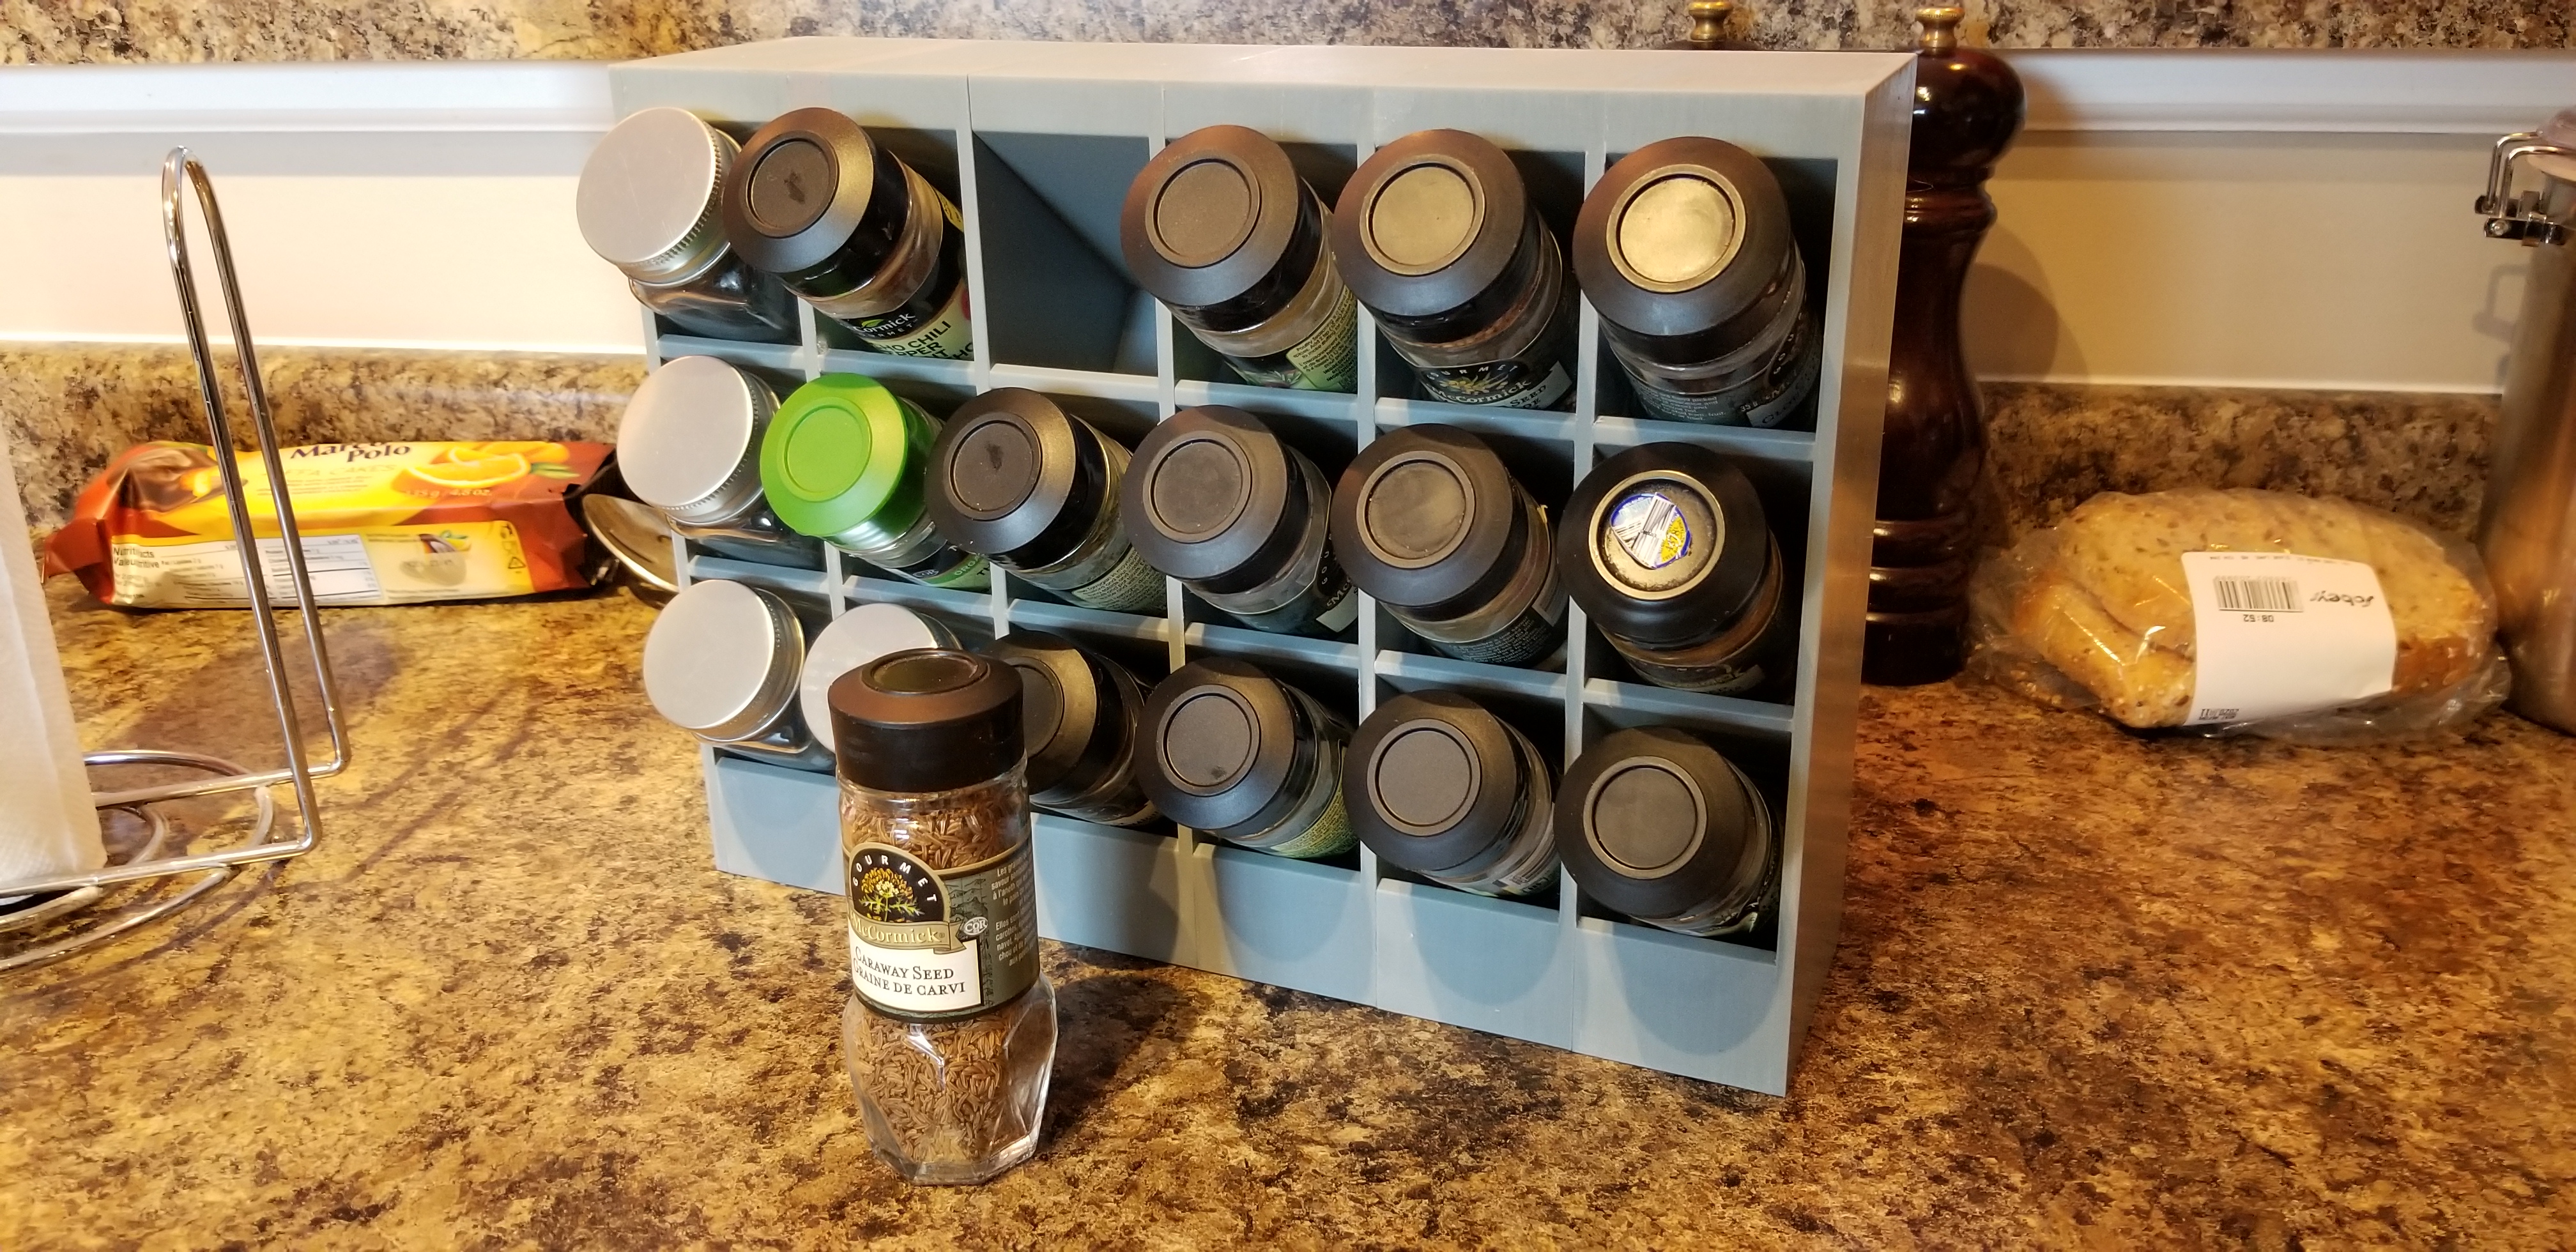 Spice rack for 4oz square spice jars